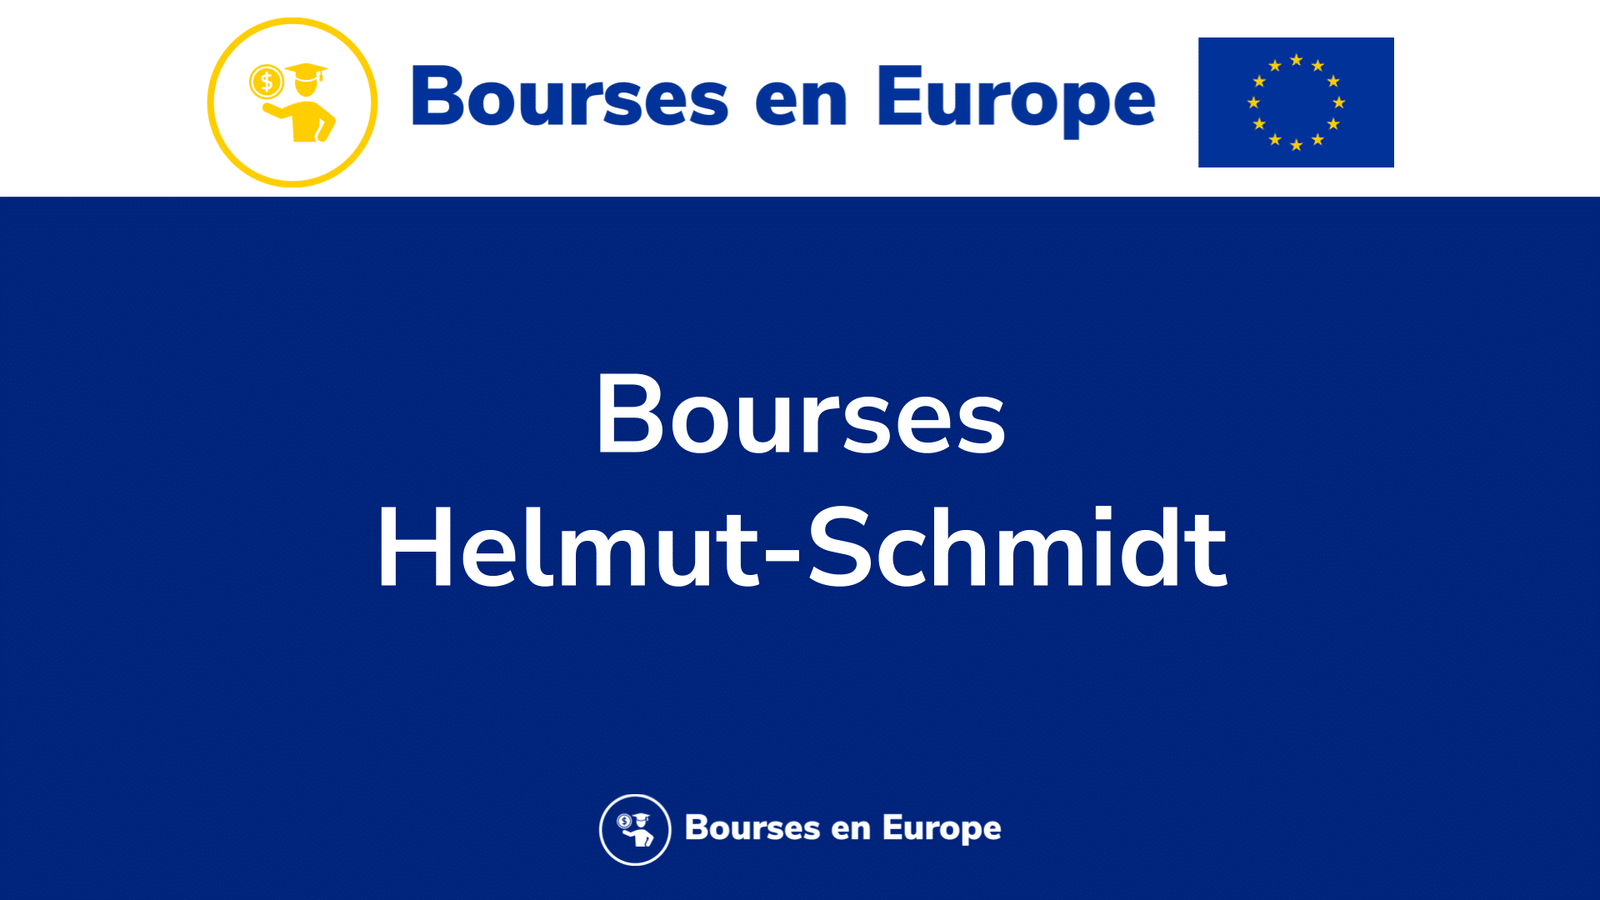 Bourses Helmut-Schmidt